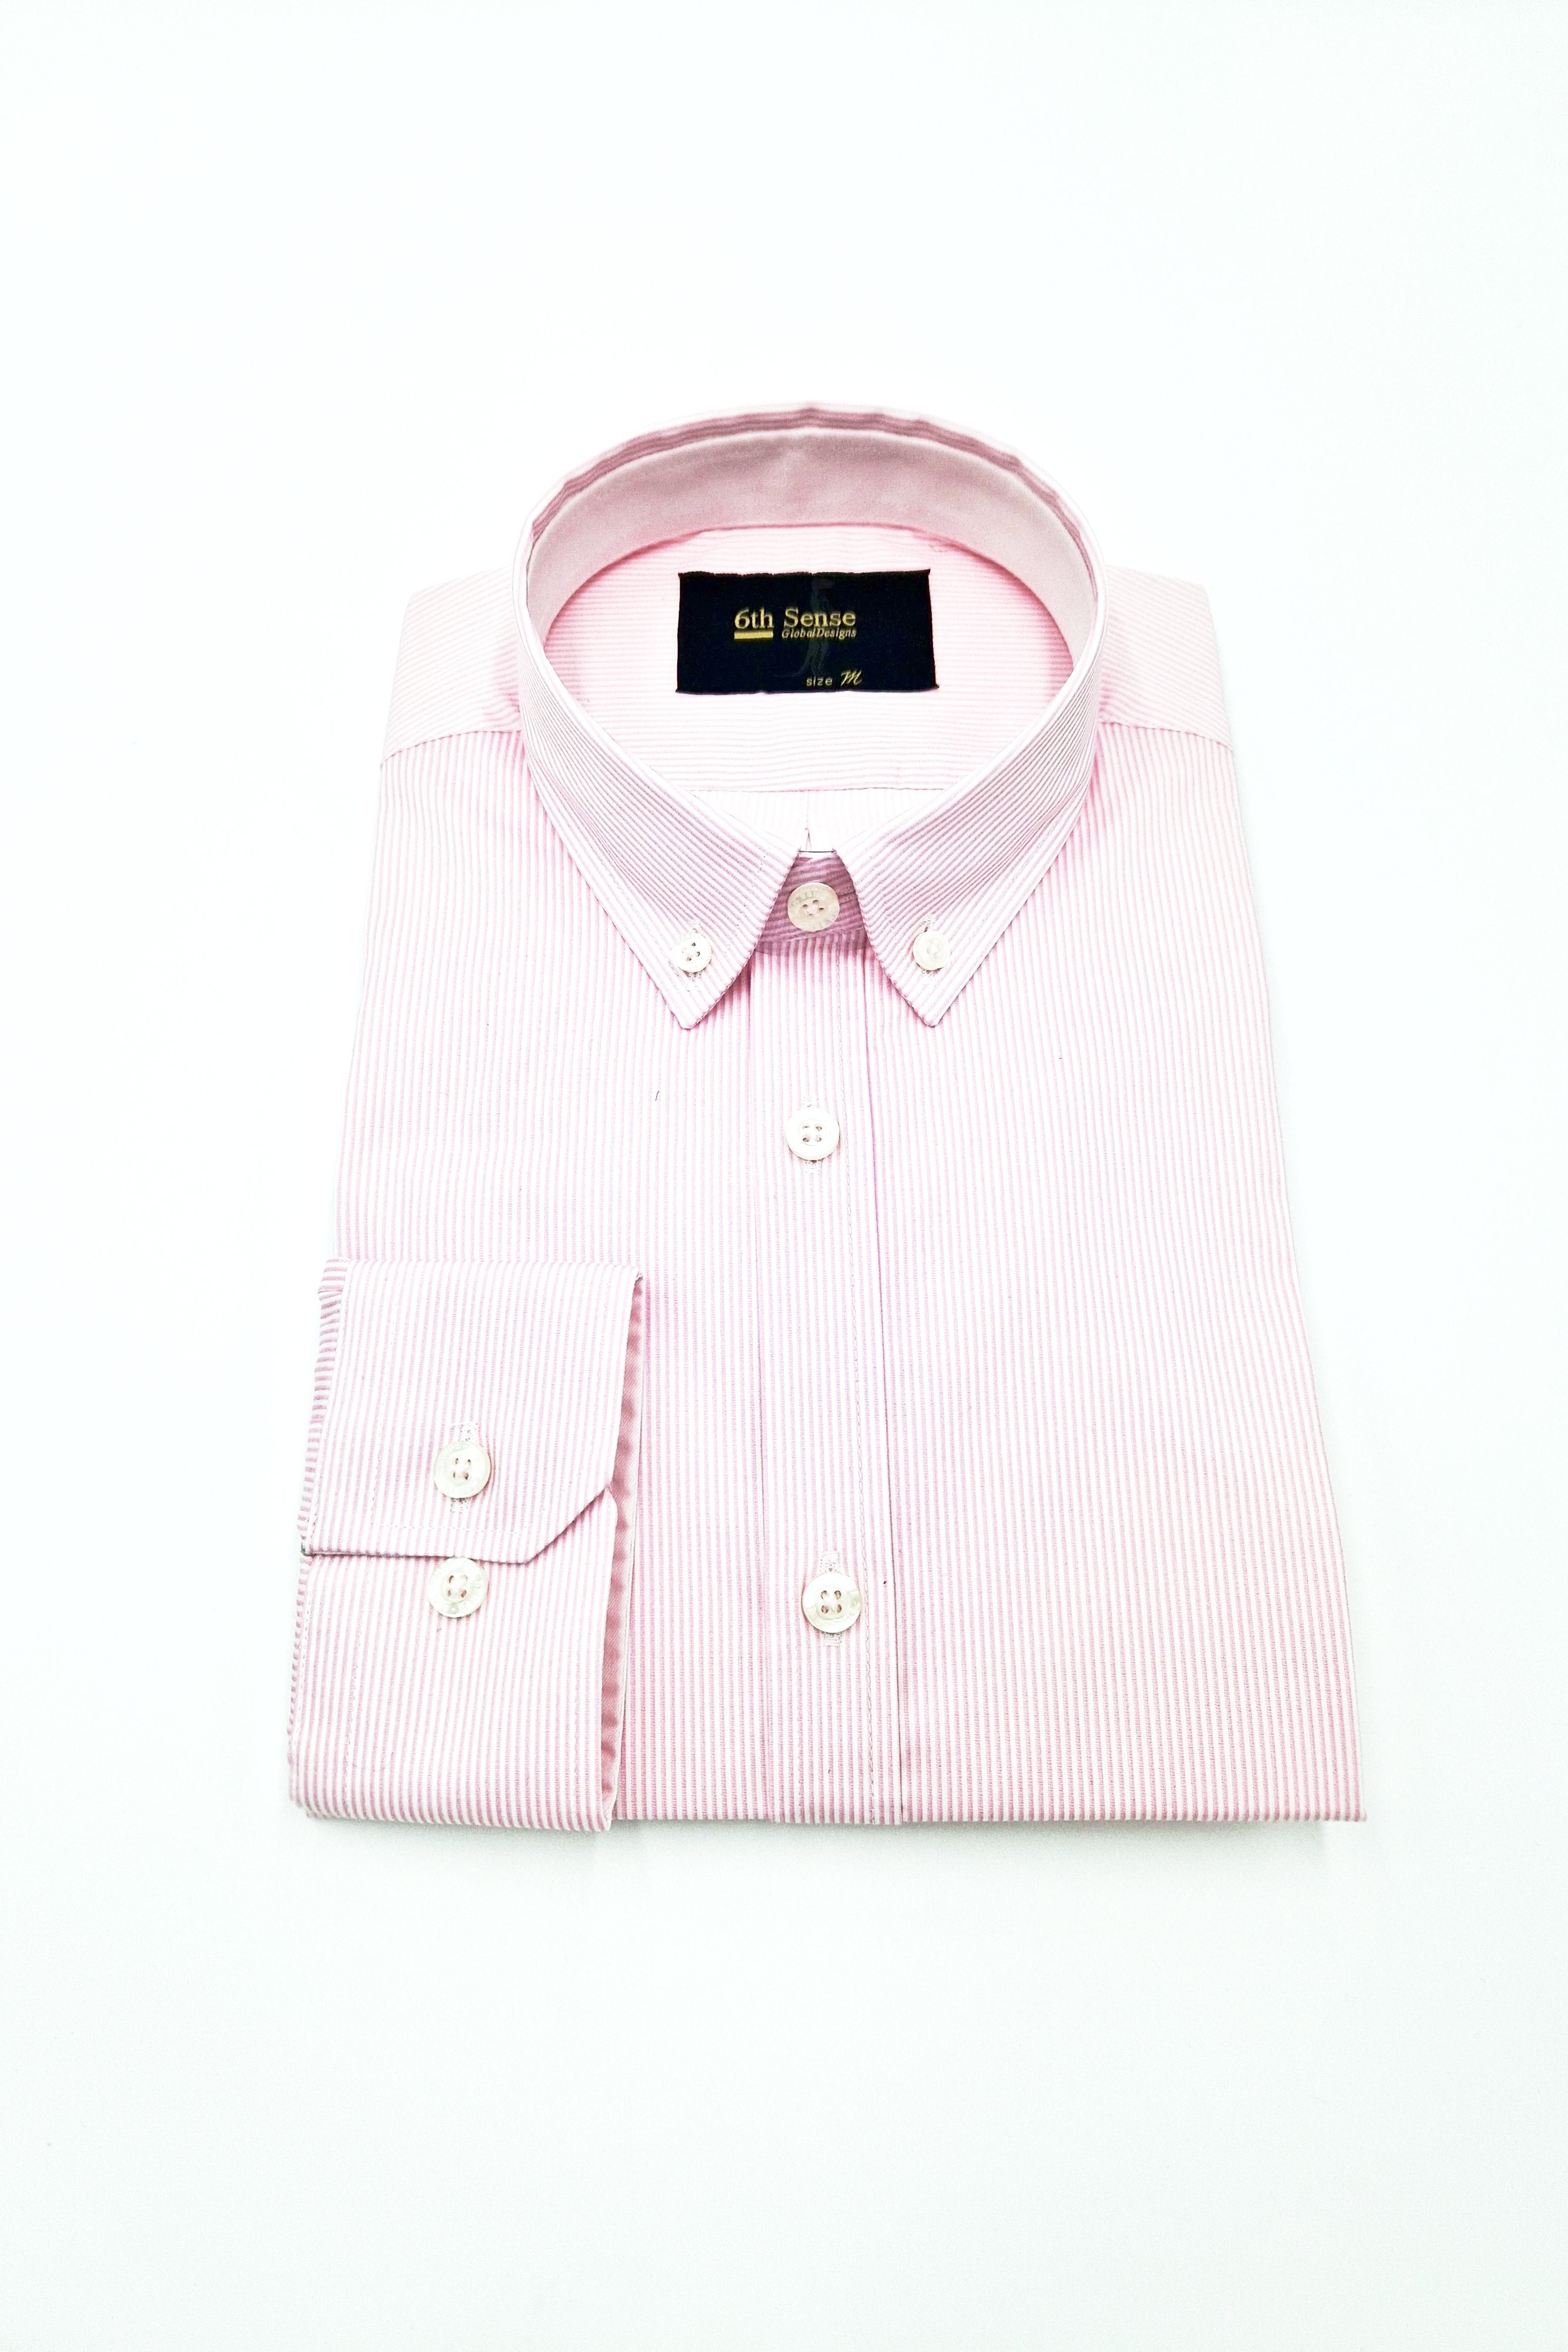 BD Pink Stripe Pattern Shirt 231-Shirt-BD-Stripe-5